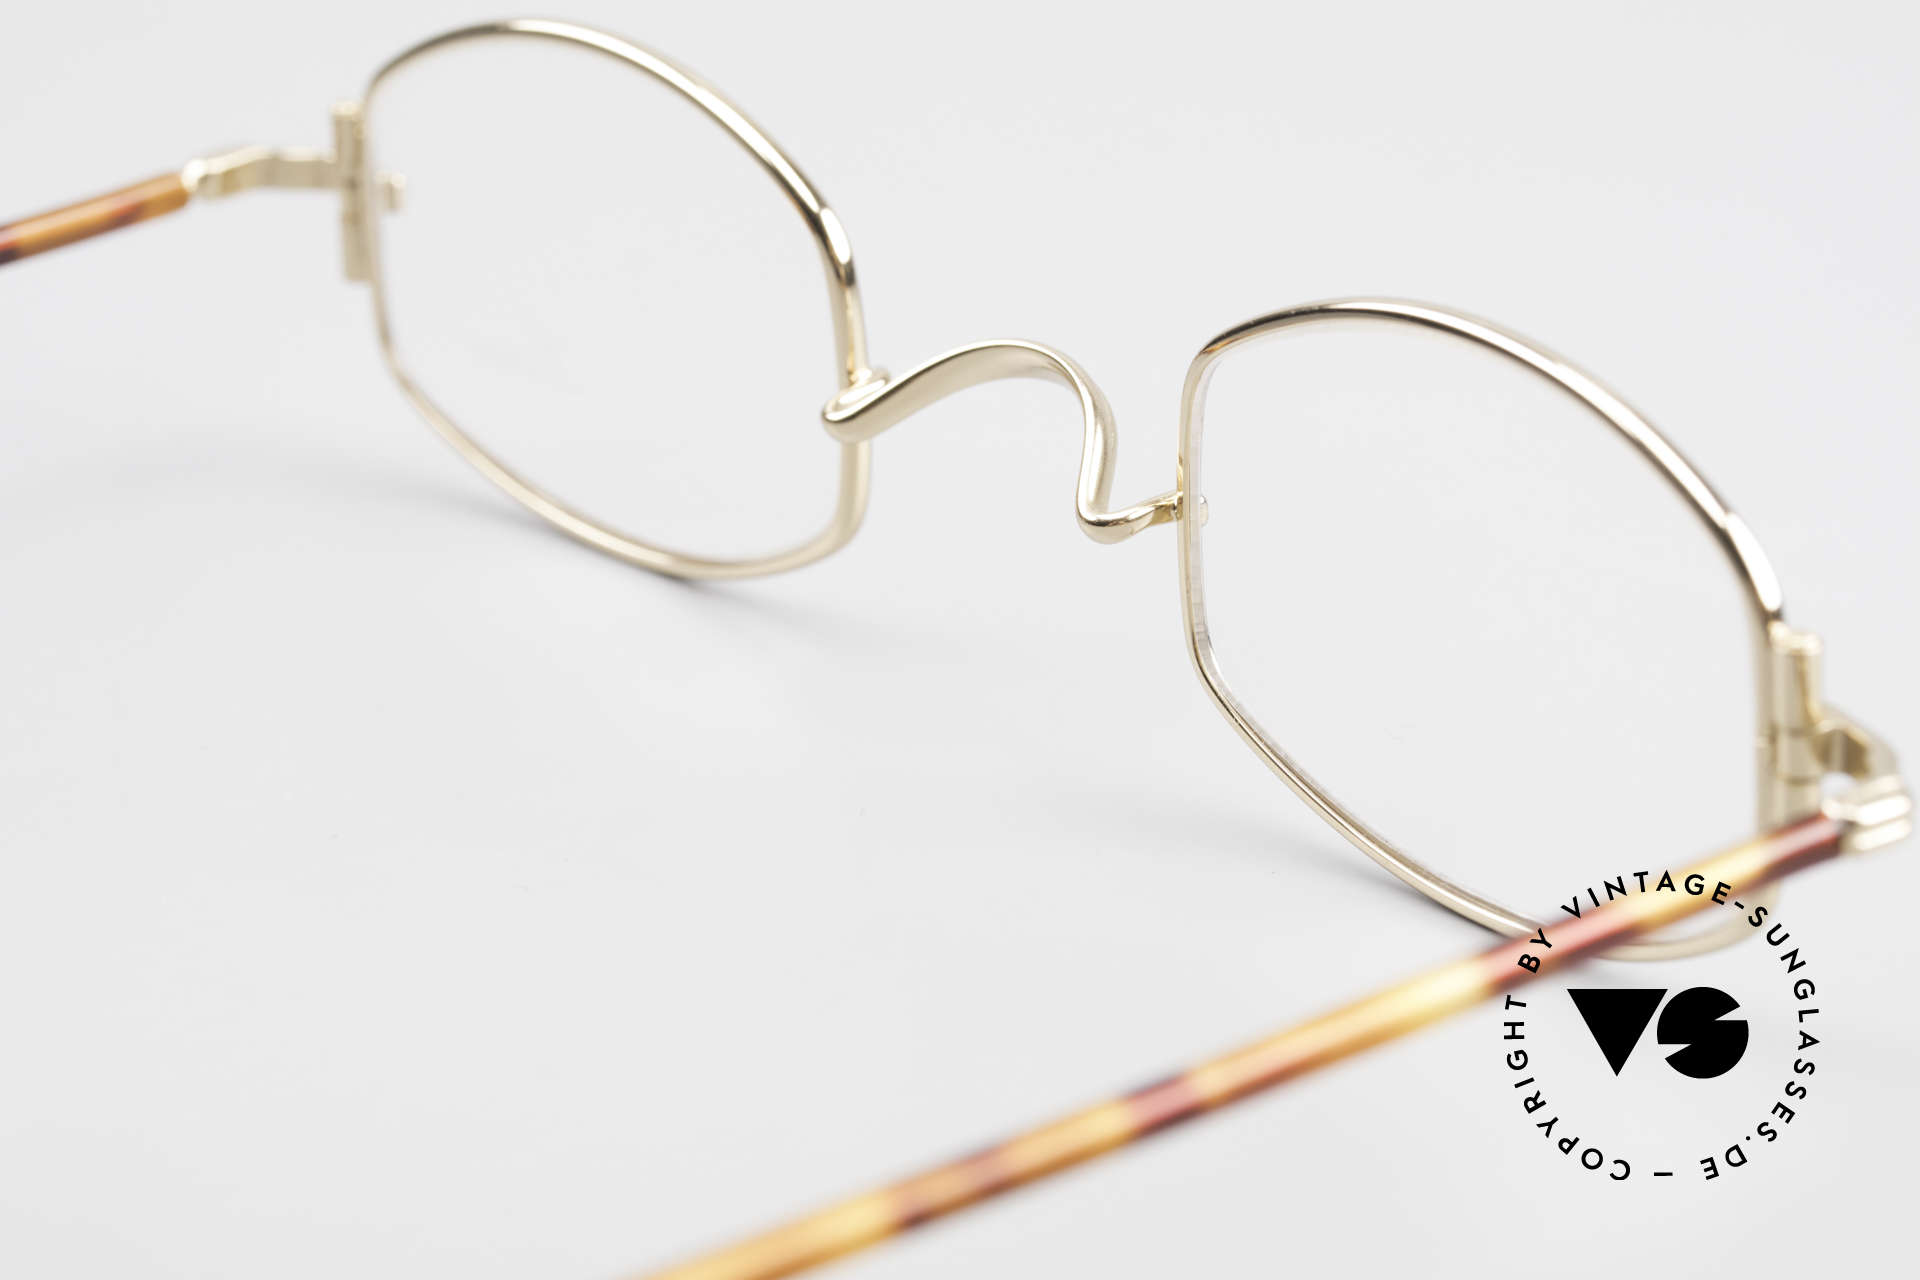 Lunor XA 03 Lunor Brille No Retro Vintage, die Front-Form wird als "liegende Tonne" bezeichnet, Passend für Herren und Damen